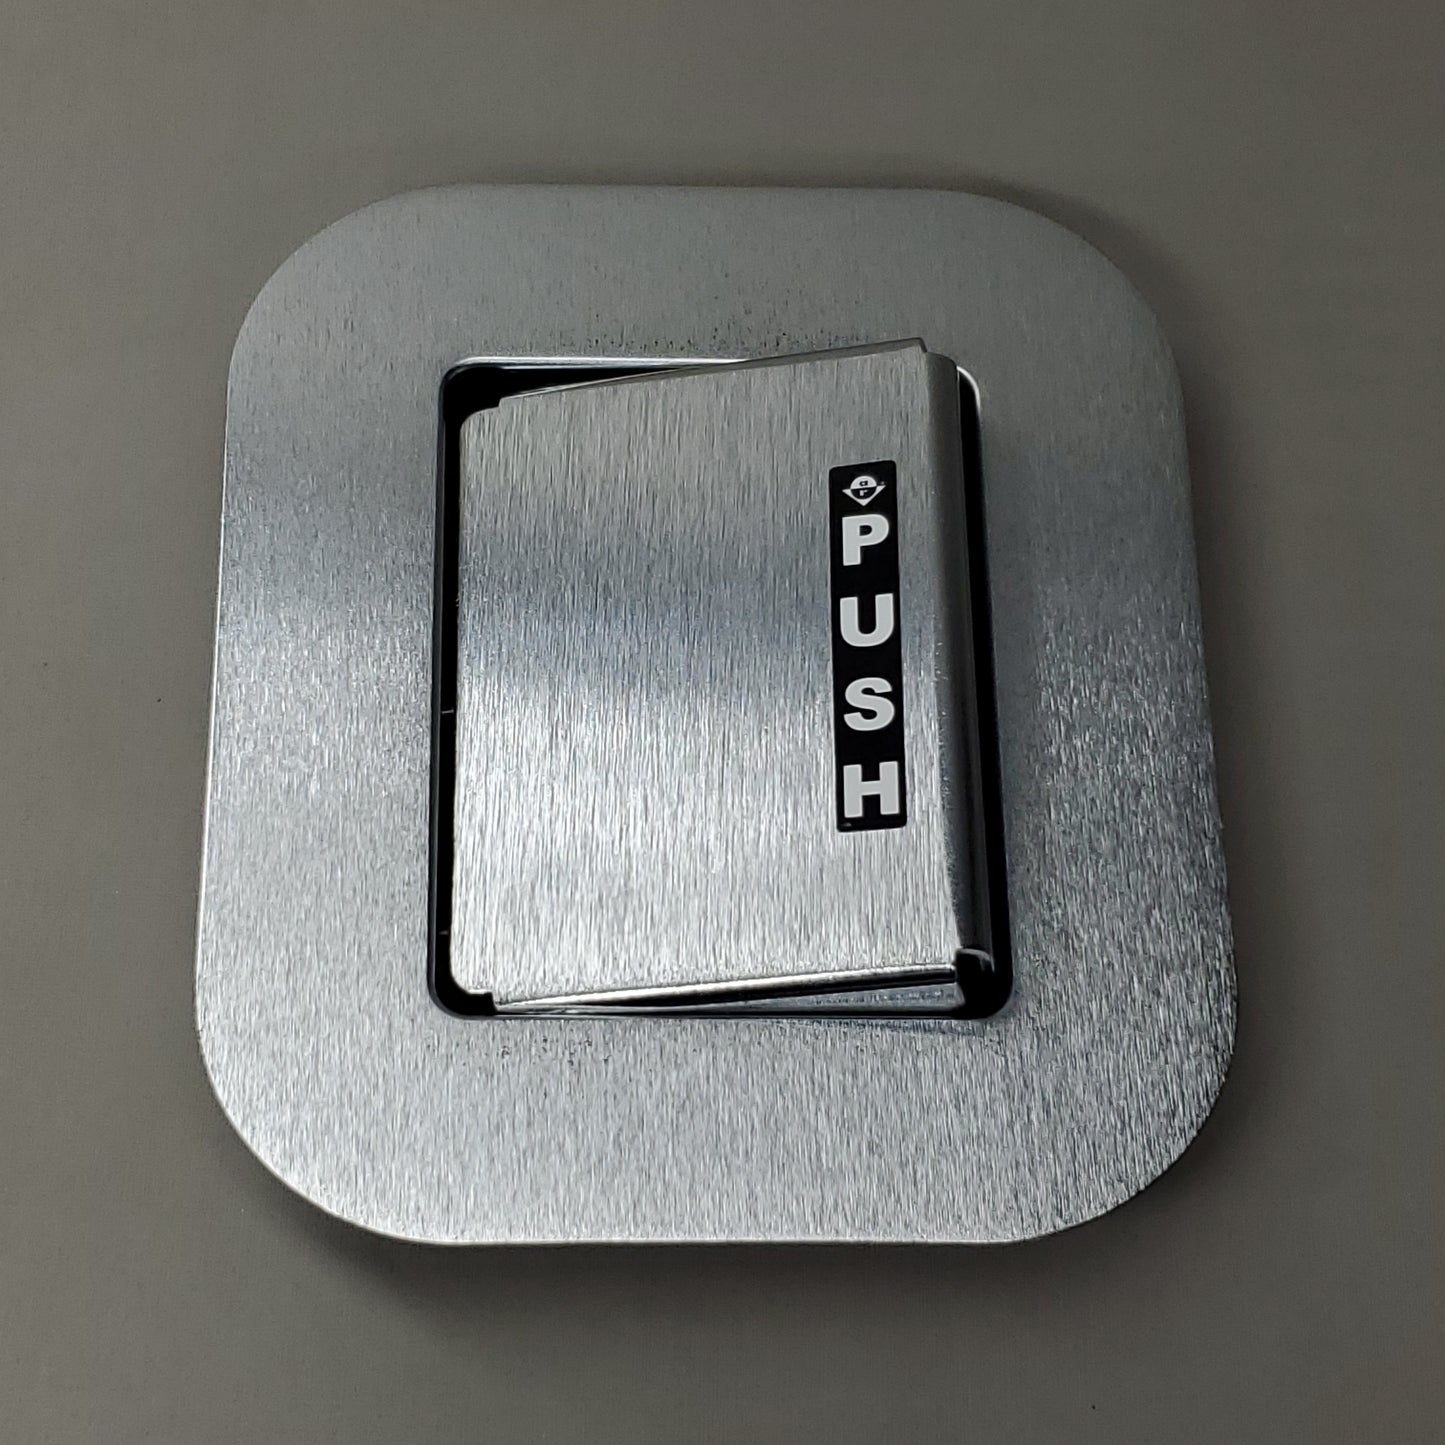 ADAMS RITE Push & Pull Paddle Recessed Door Latch Kit LHR For 6-8 Ft. DOOR Silver / Black Aluminum D3682-812 (New)